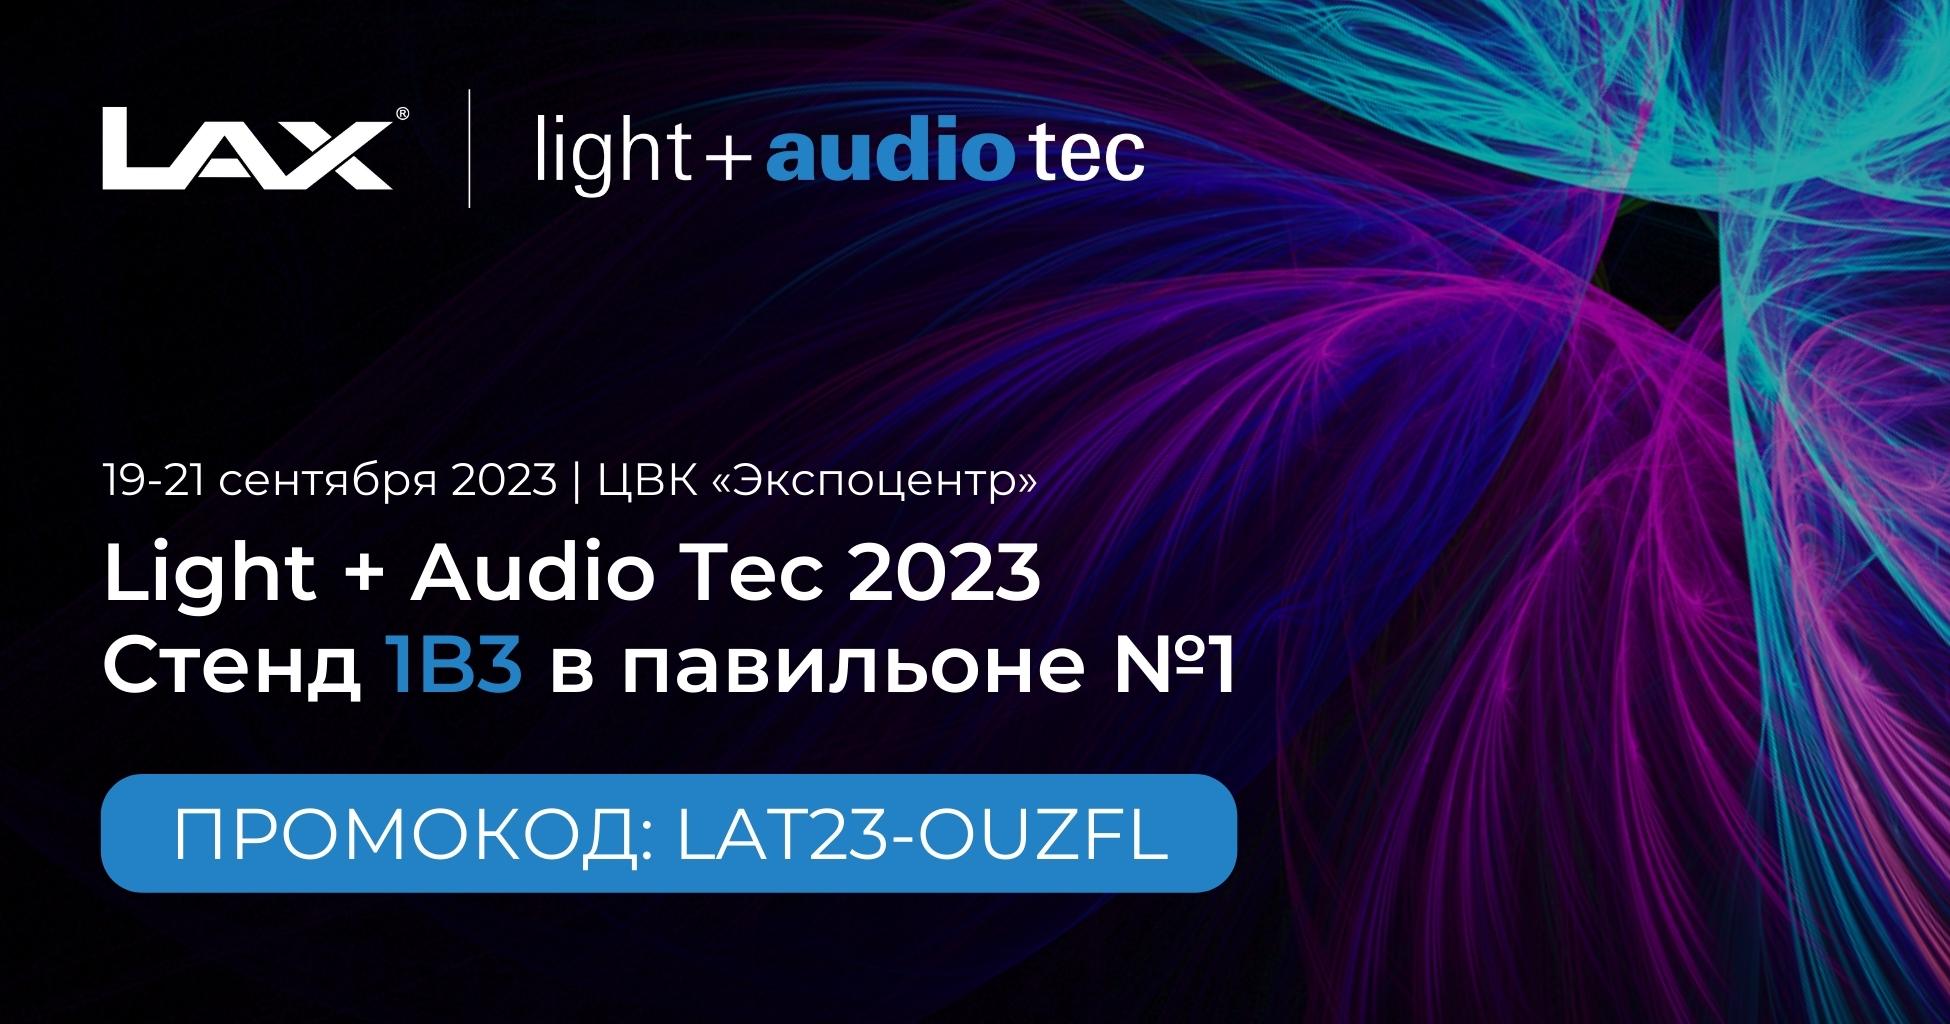 LAX примет участие в Light + Audio Tec 2023